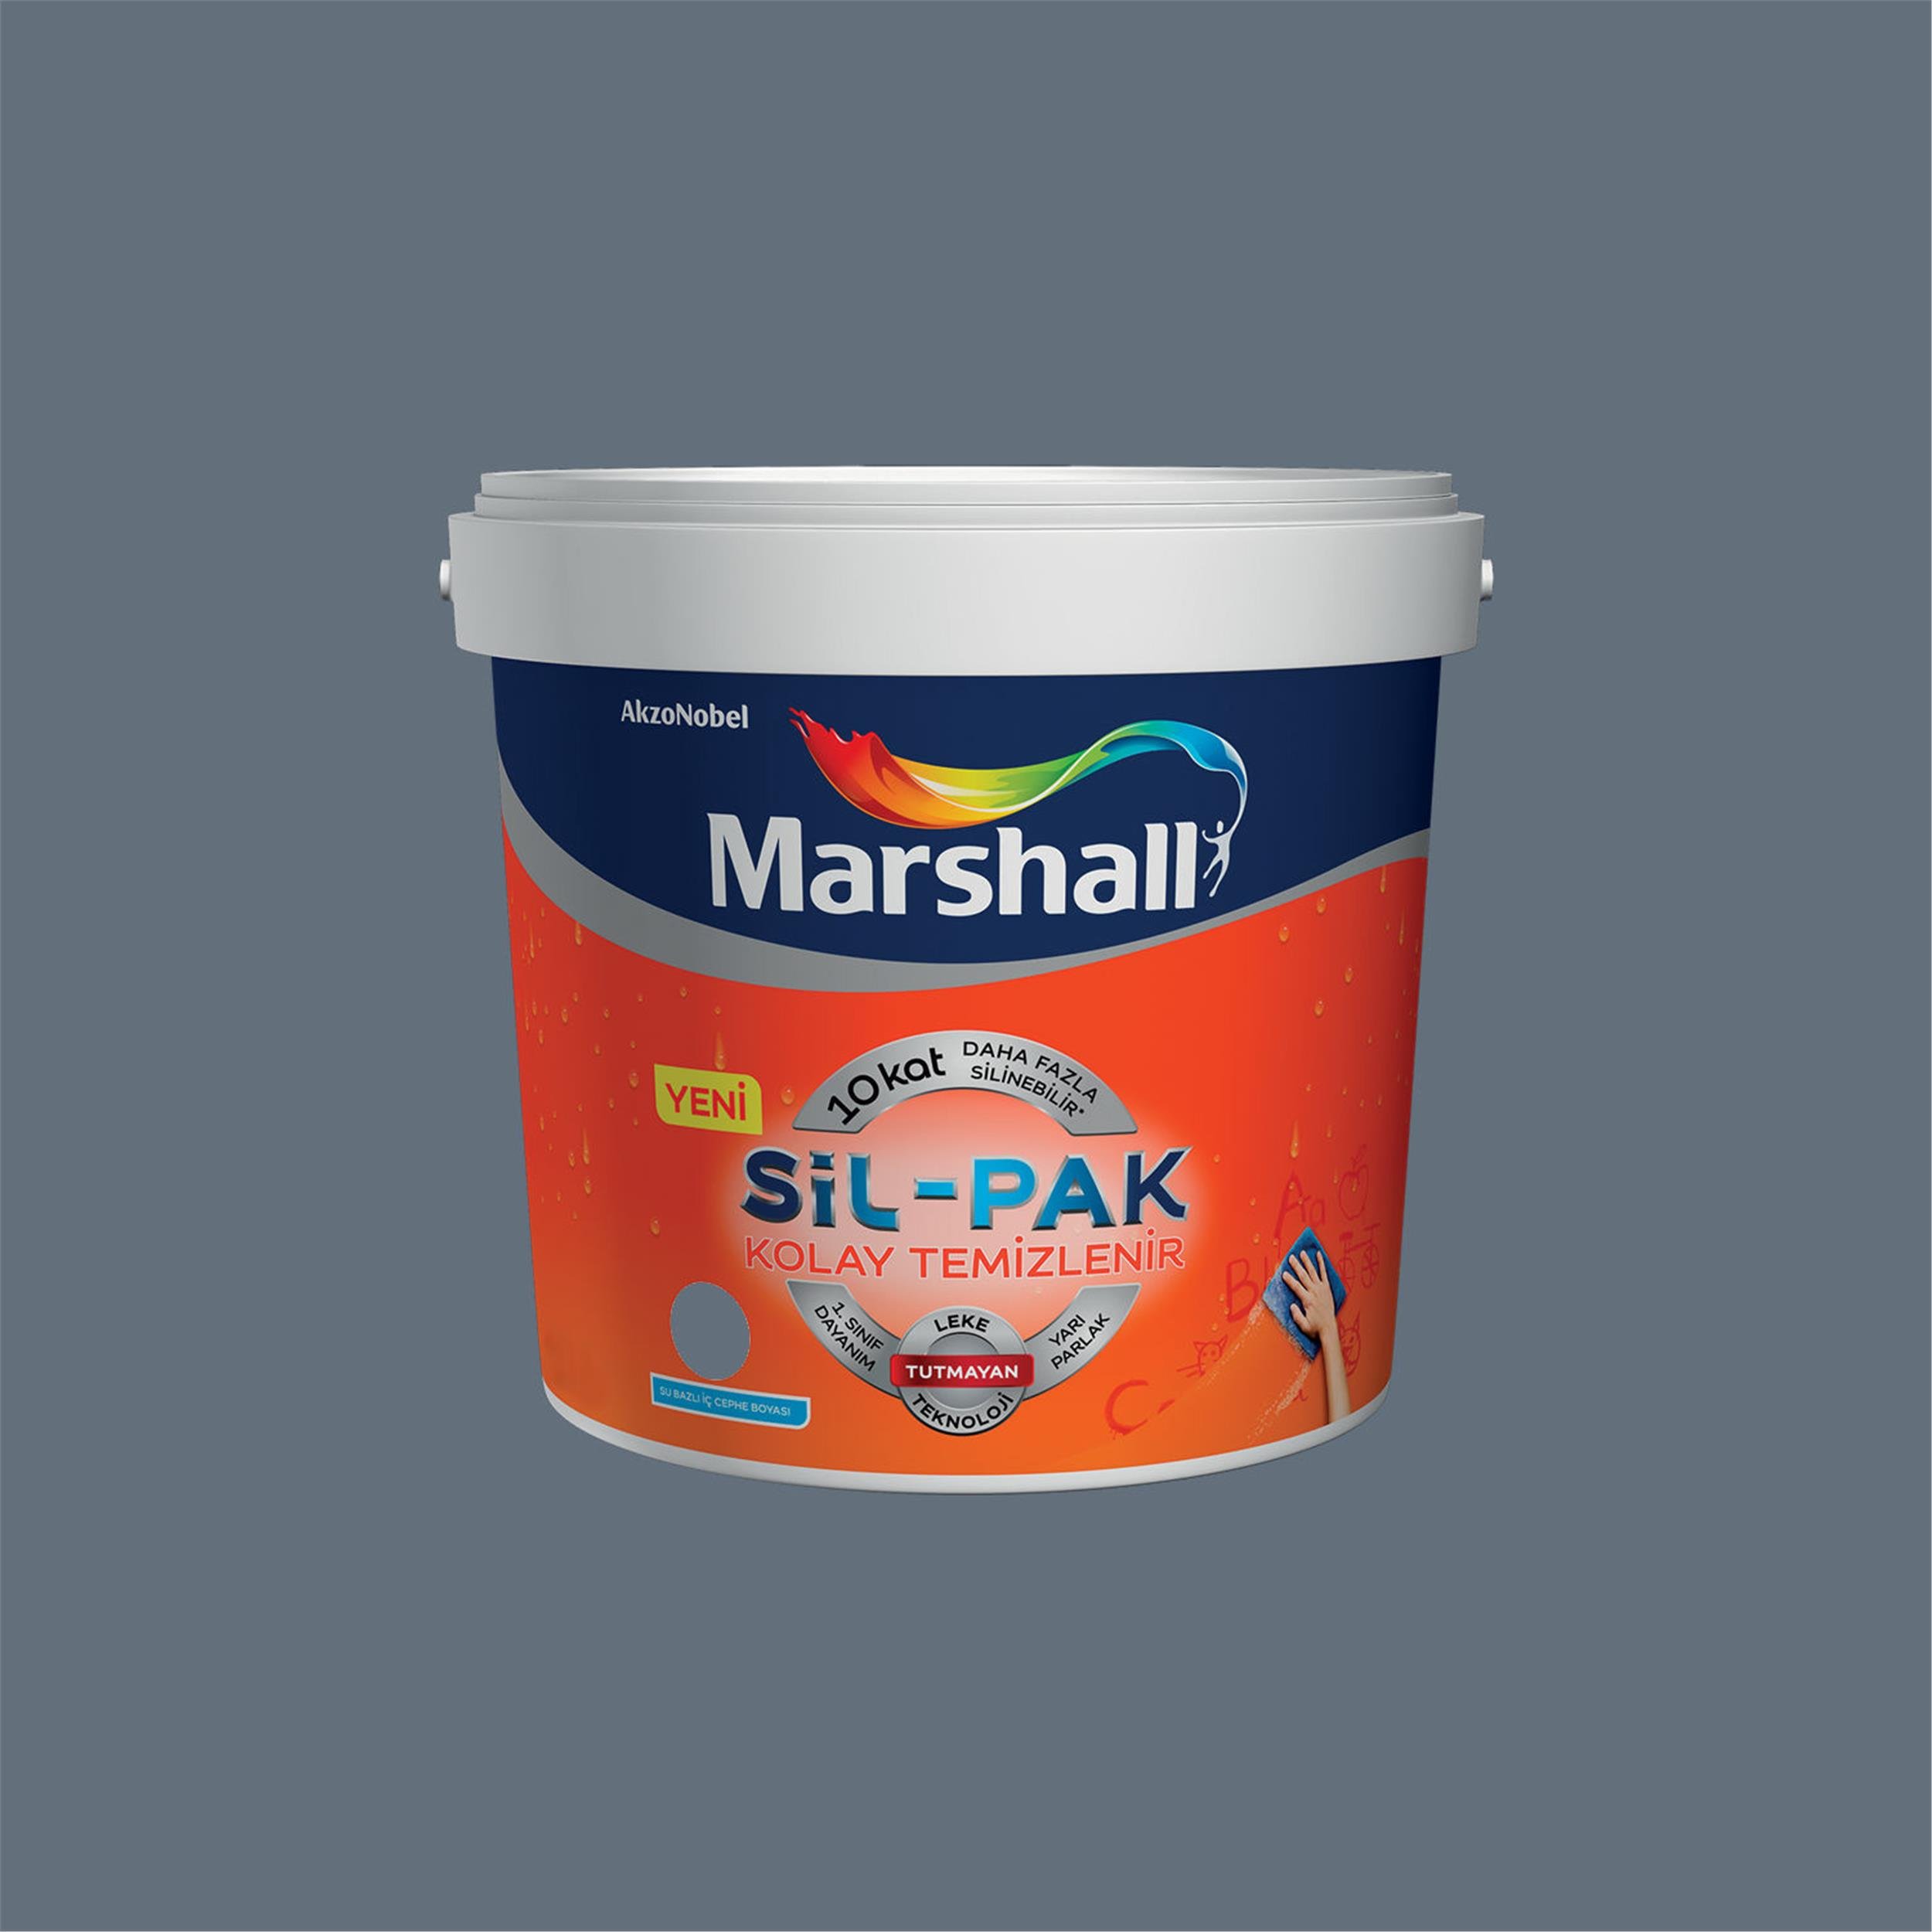 Marshall Füme 7,5 Litre Sil-Pak Kolay Temizlenir Silinebilir Su Bazlı İç  Cephe Boyası (MARSHALL.5253983) | Afeks Yapı Market